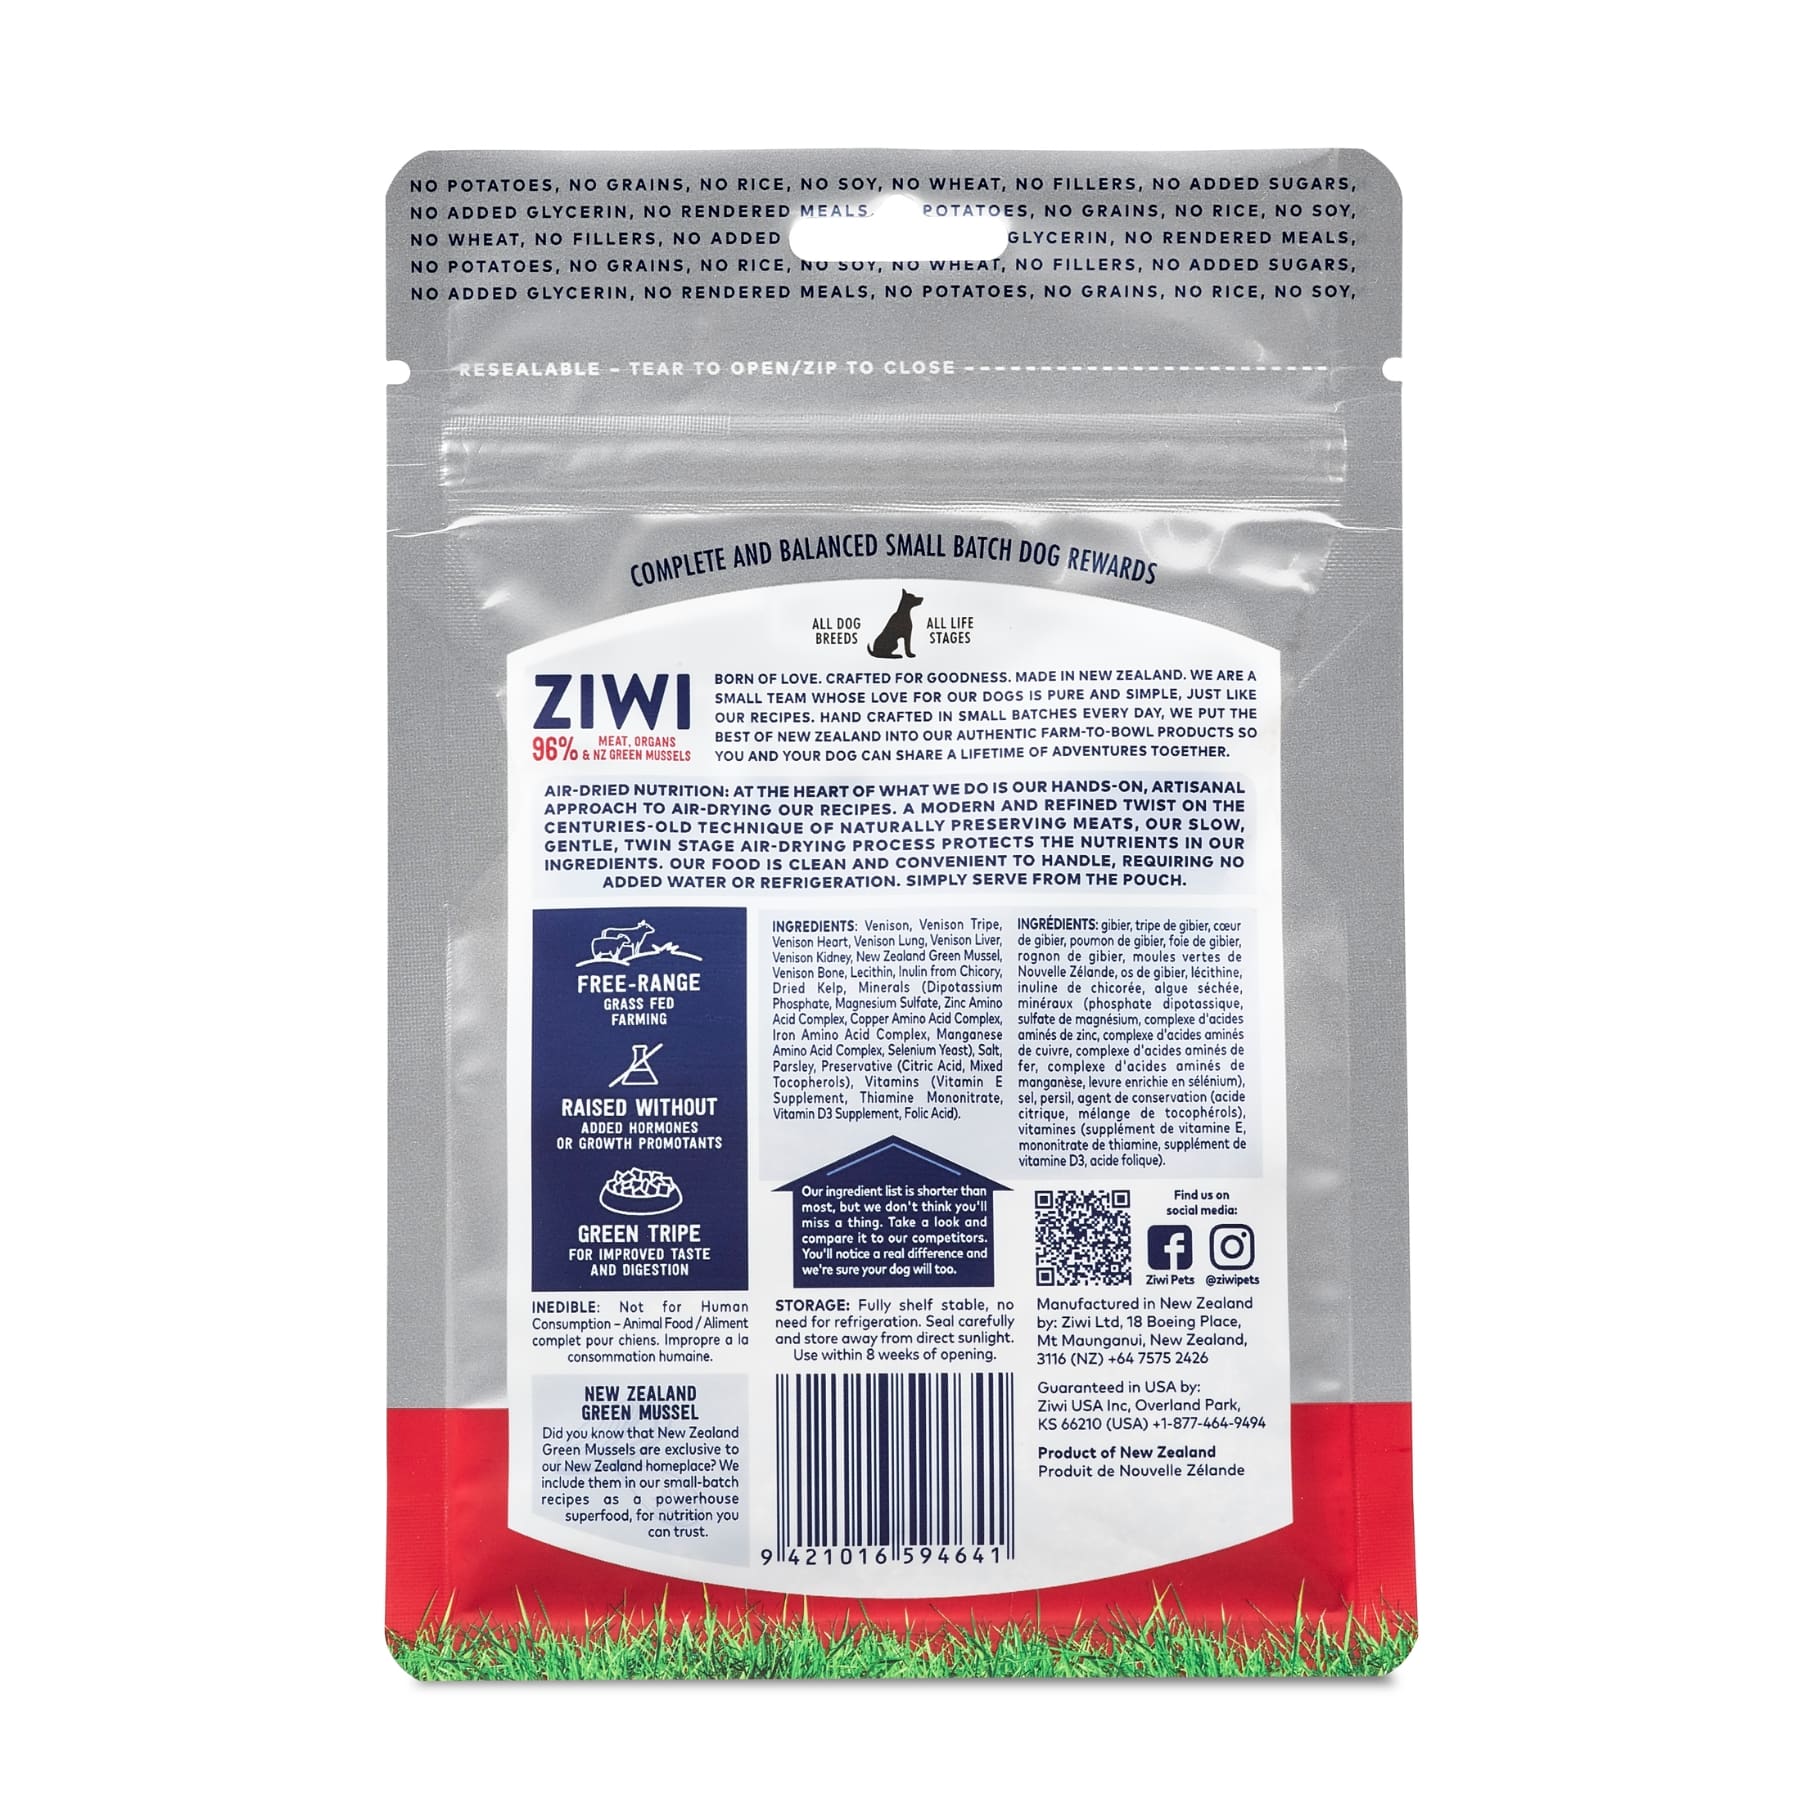 ZIWI Peak Good Dog Rewards Venison Recipe. New Zealand-Made Dog Treats.